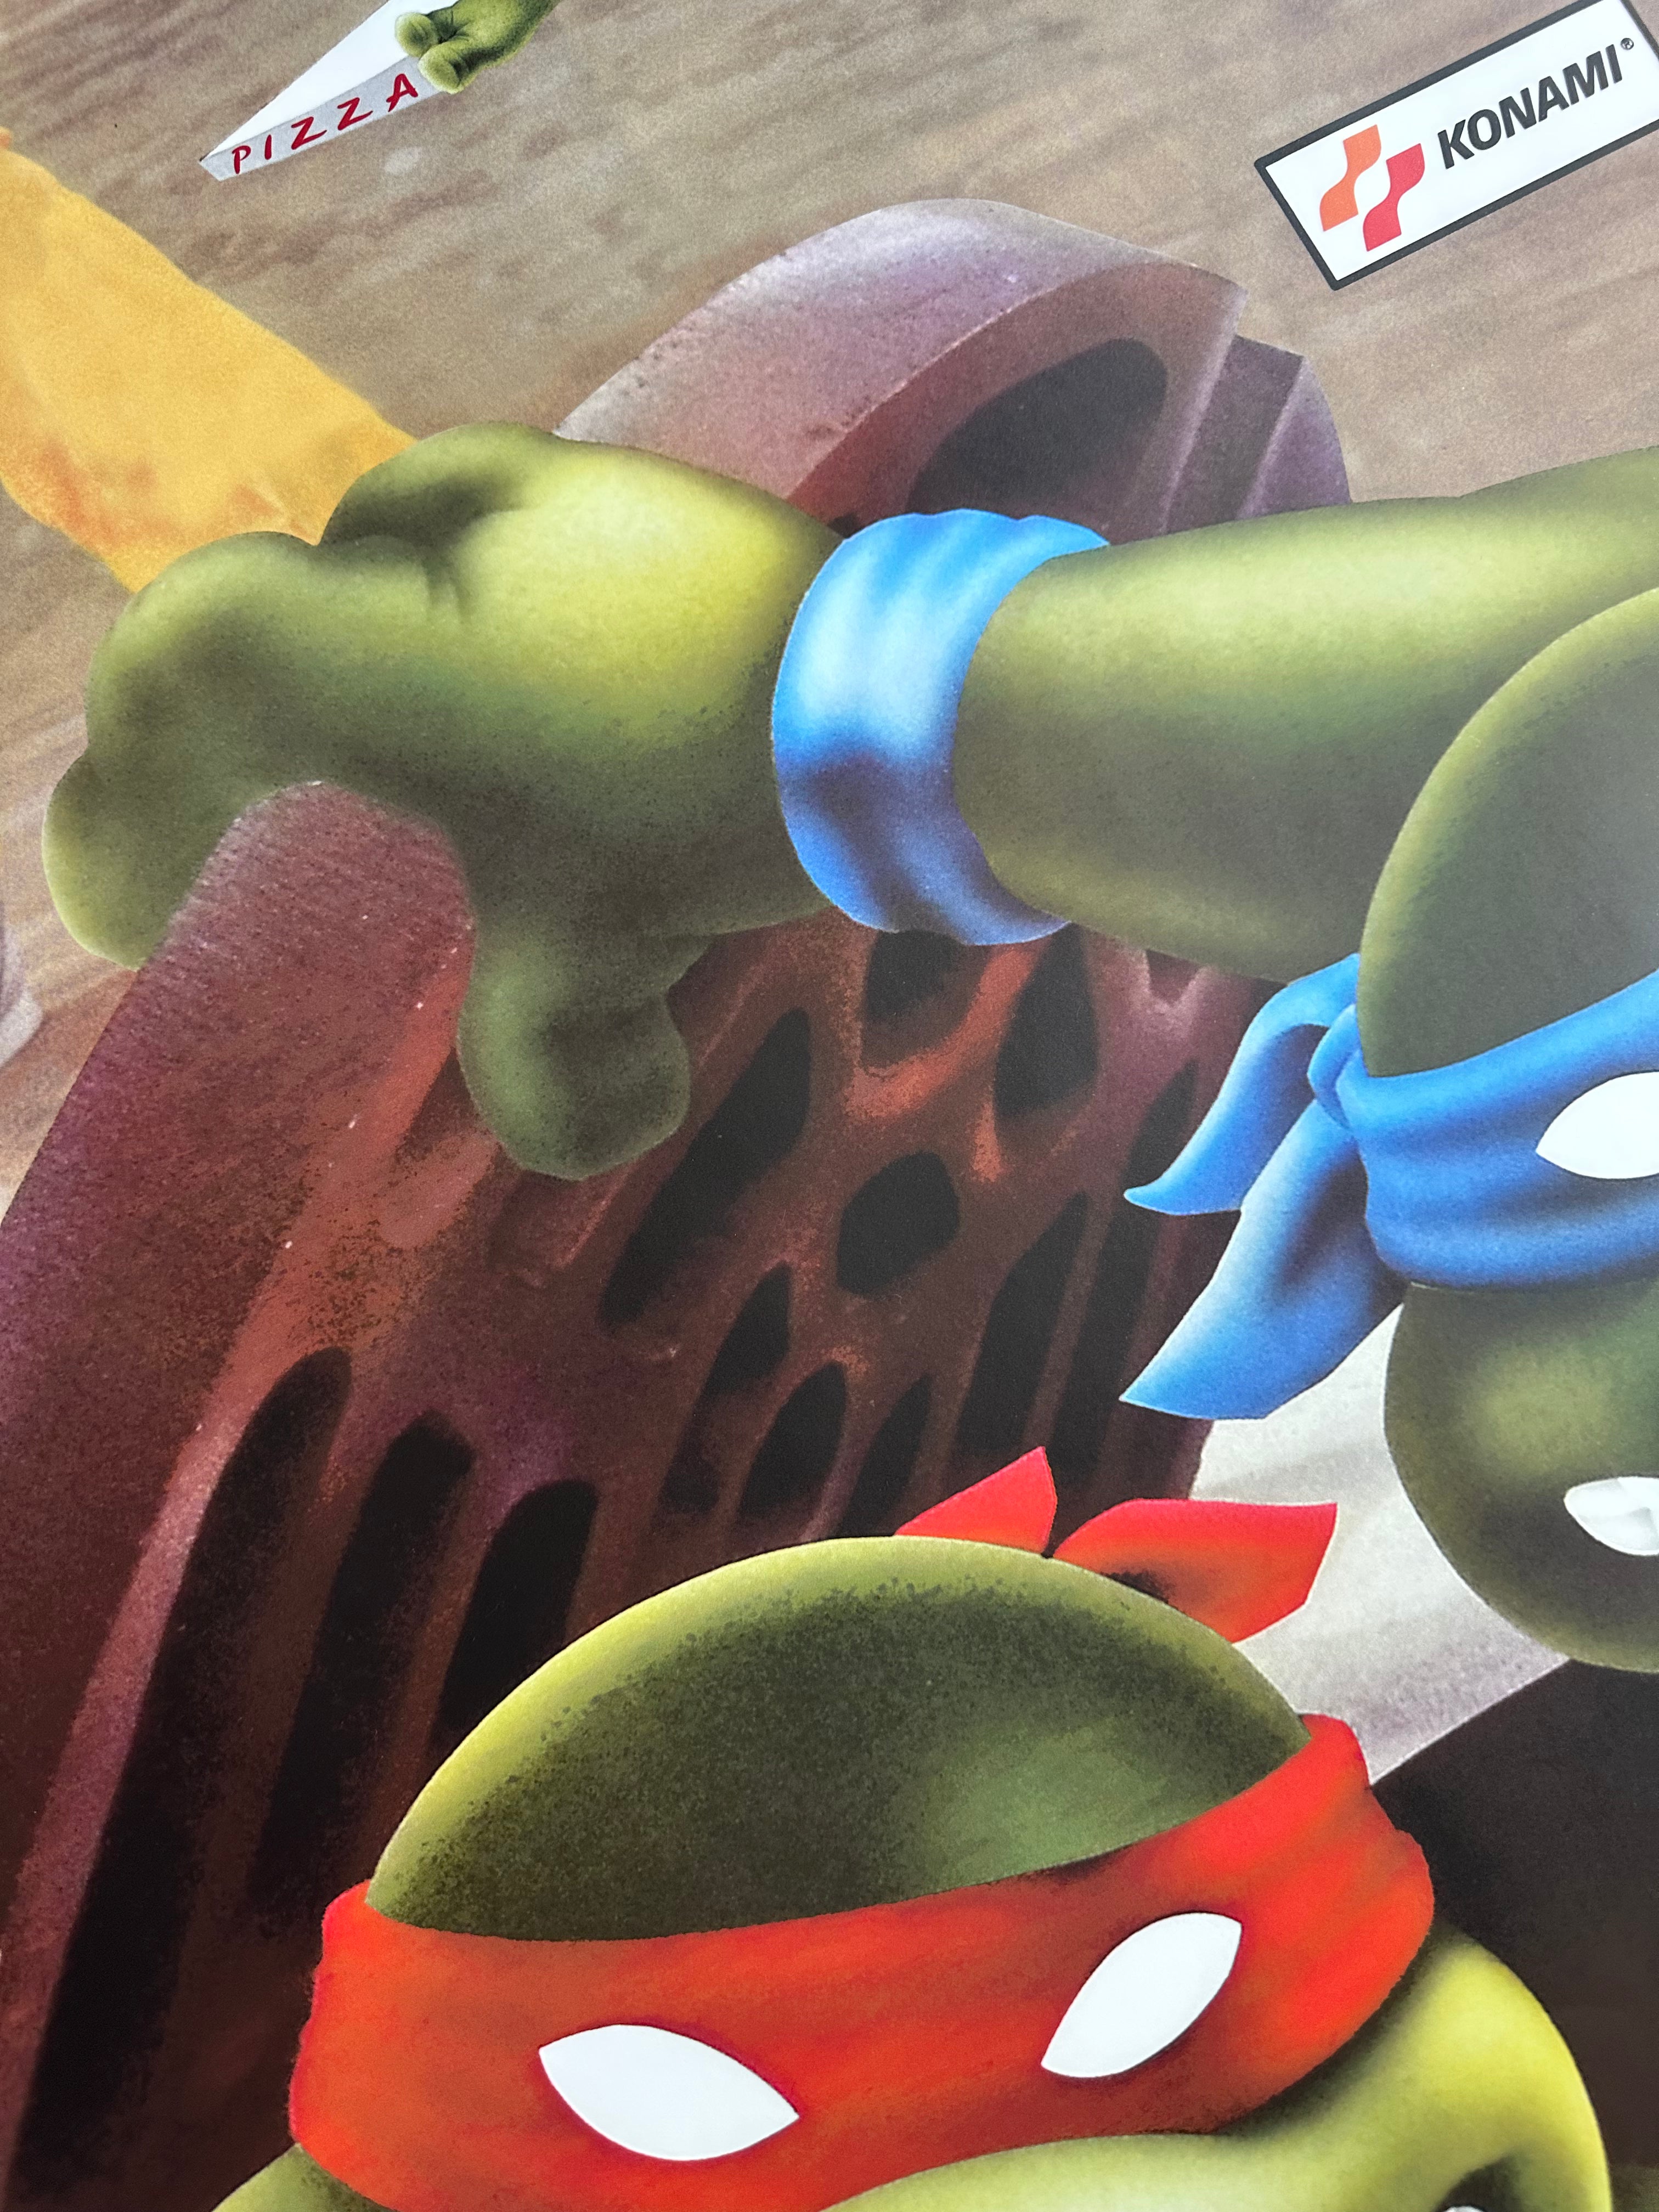 Teenage Mutant Ninja Turtles Complete Art Kit